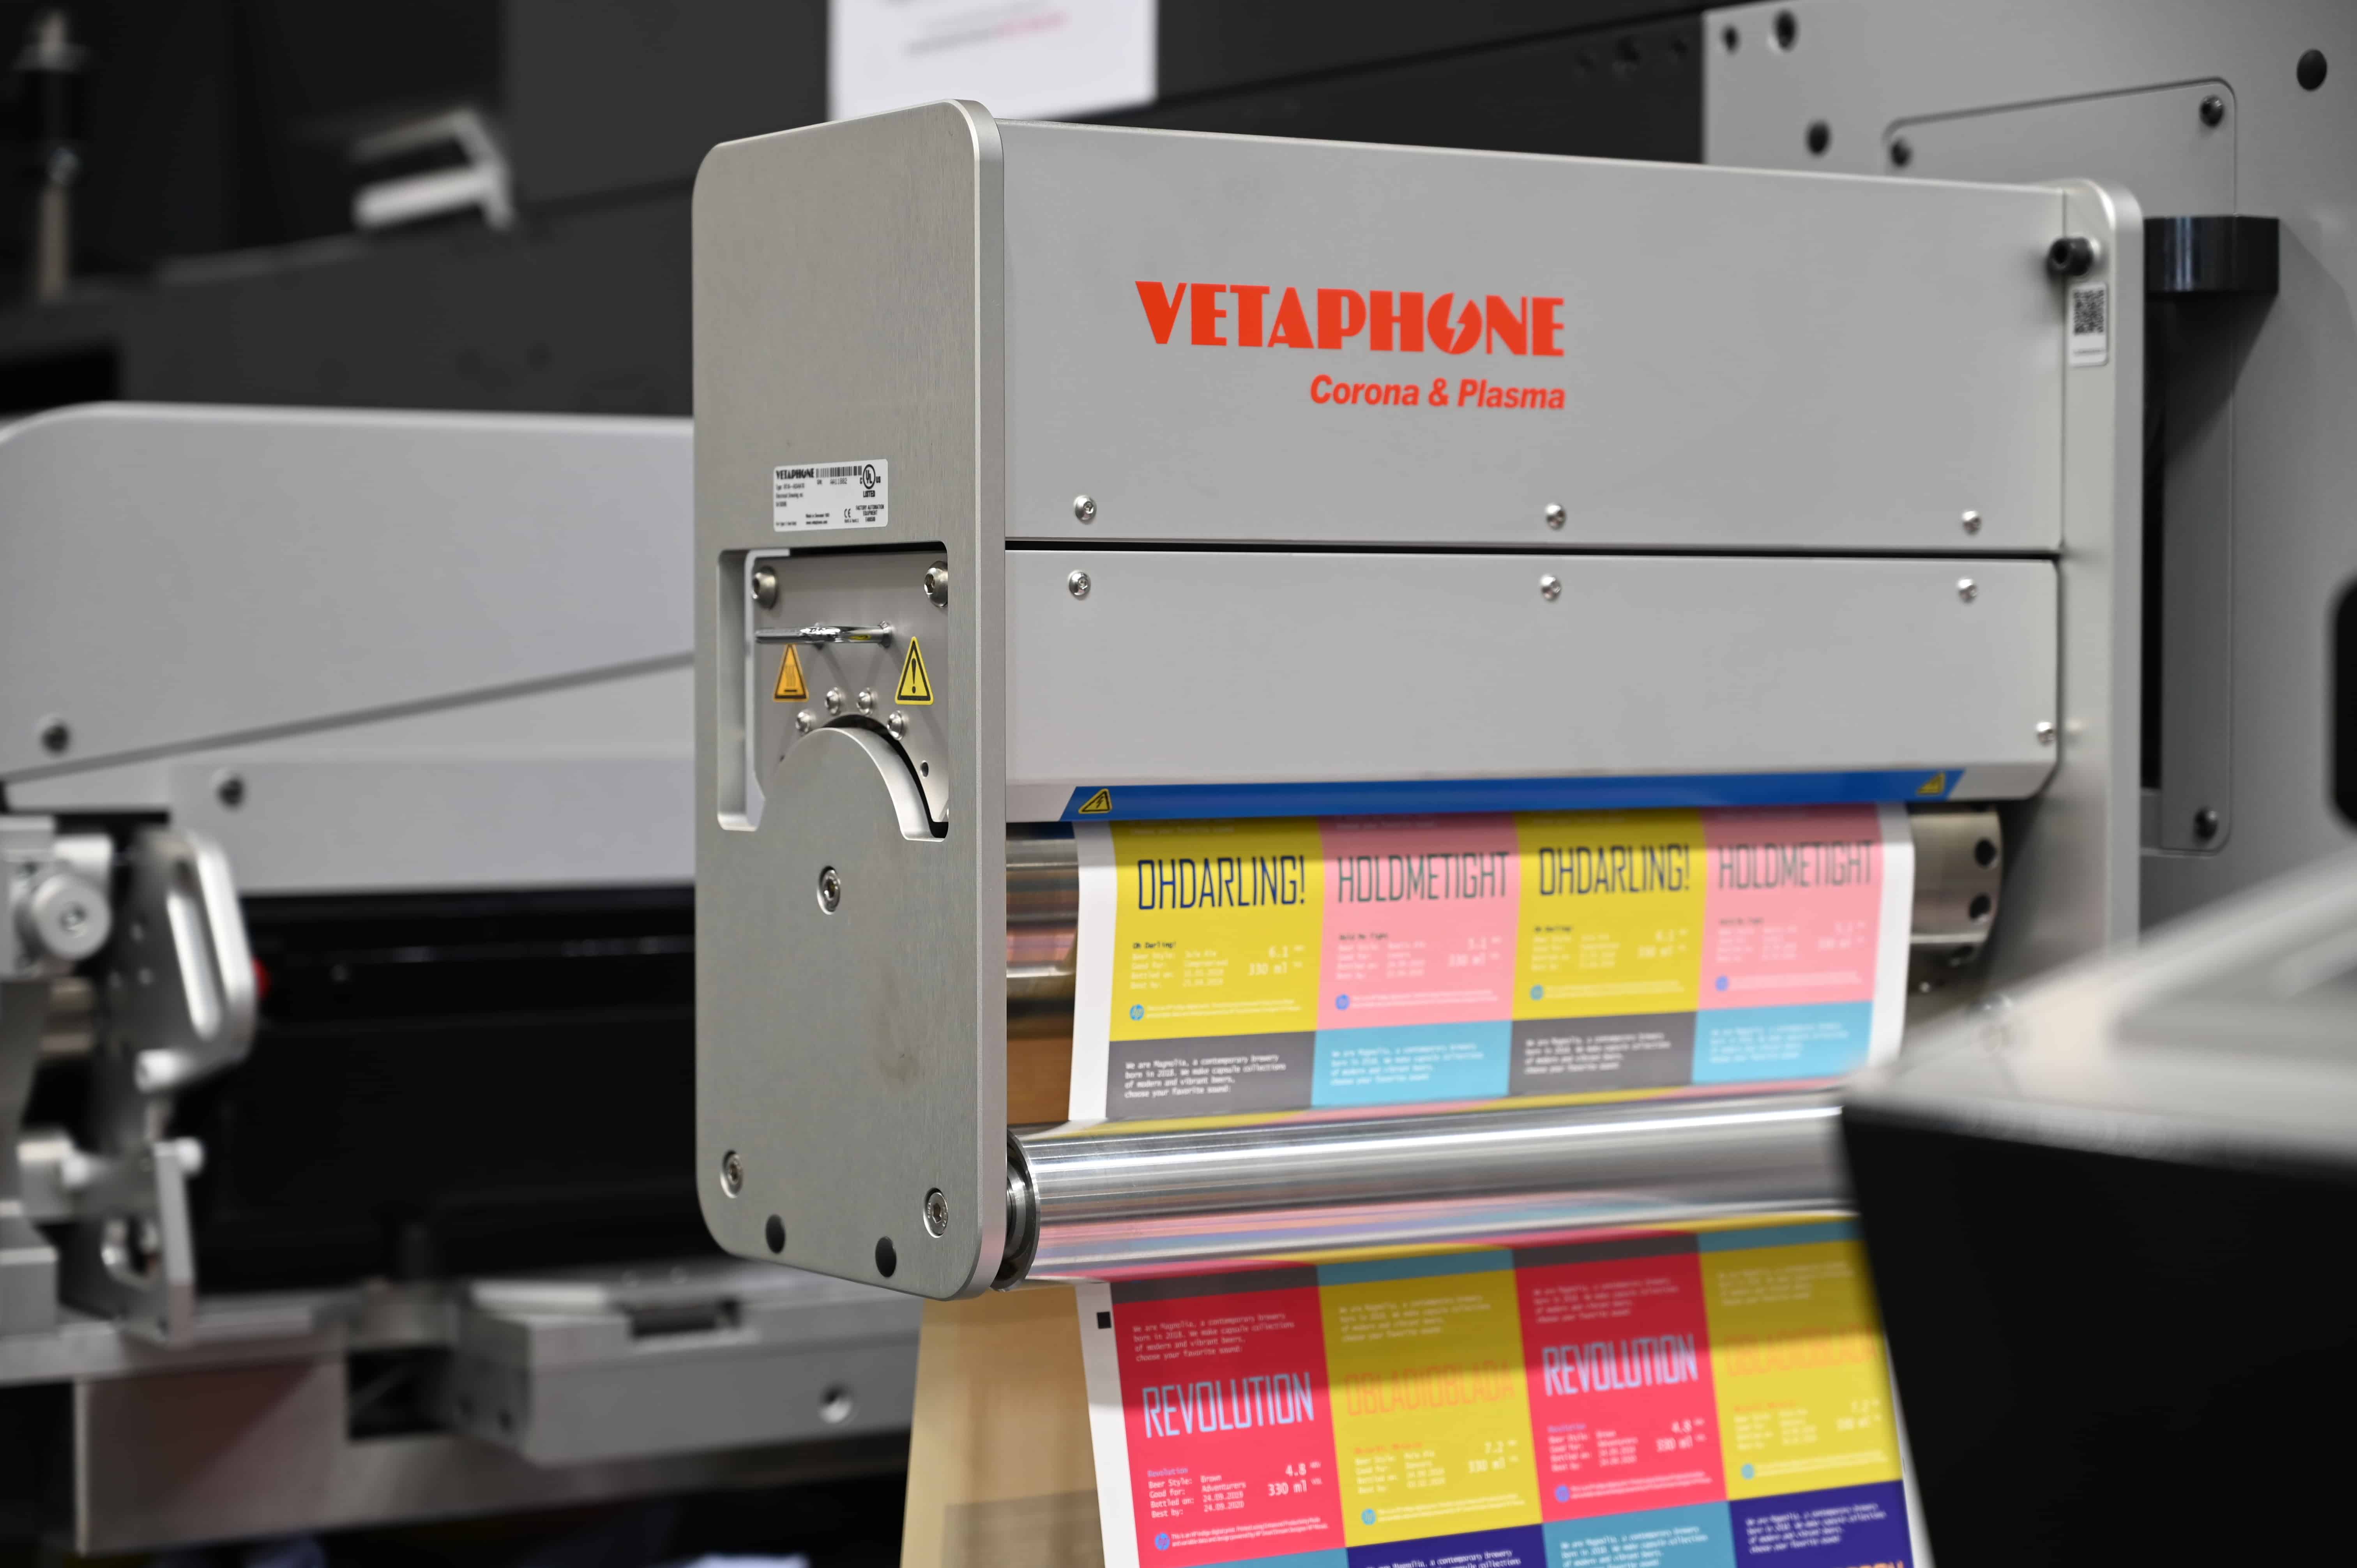 Vetaphone Corona-Behandler sind bei mehr als 80% der Verarbeiter im Bereich der Schmalbahndruckmaschinen installiert (Quelle: Vetaphone)